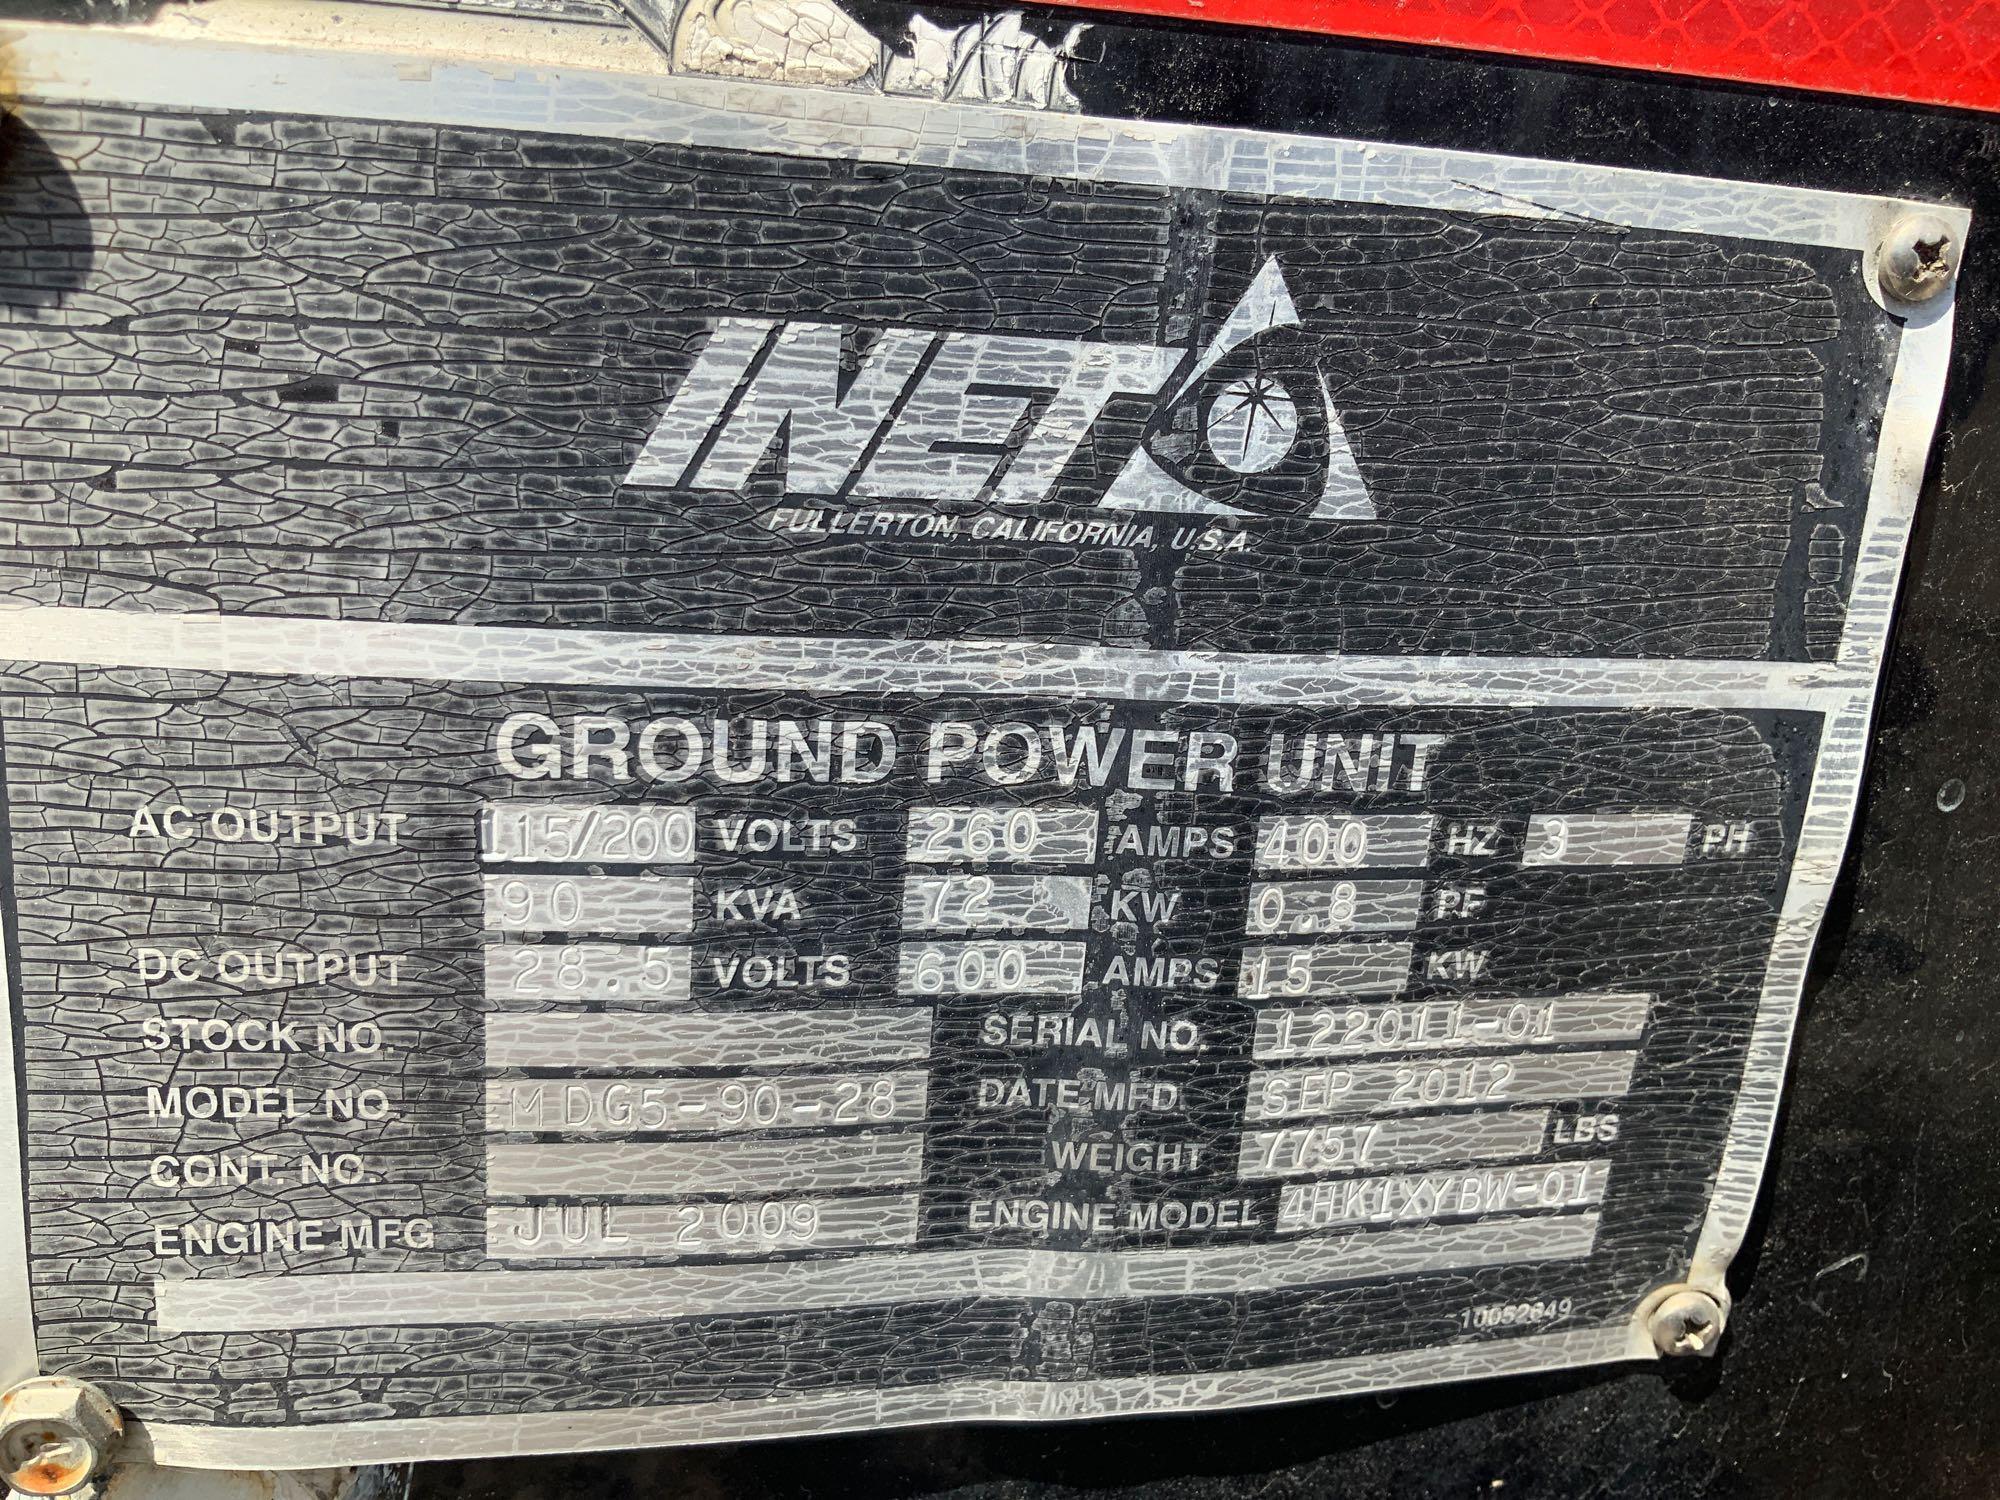 2012 Inet MDG5-90-28 72KW Ground Power Unit